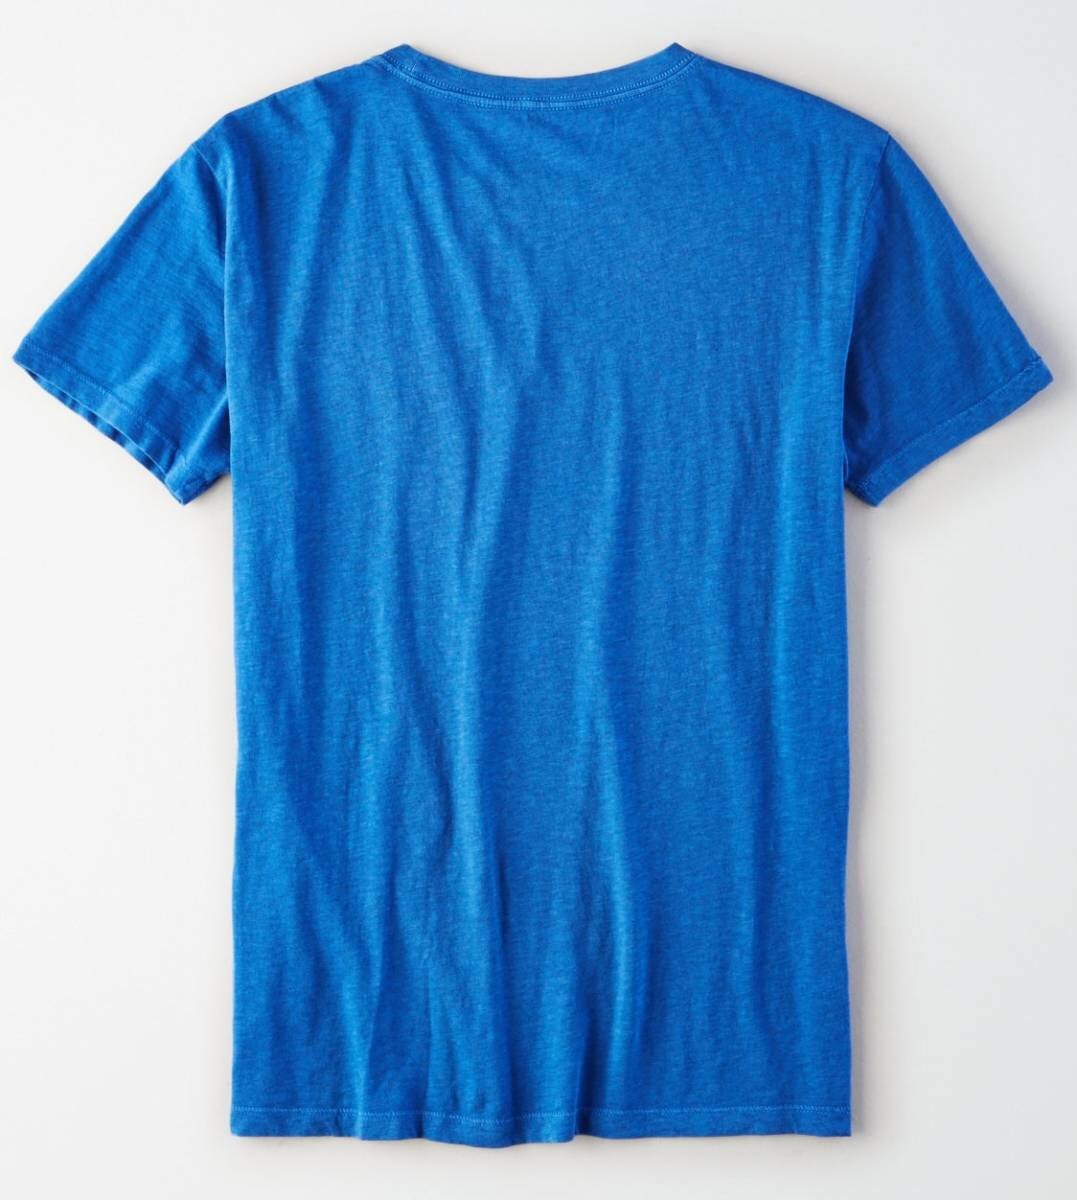 セール! 残りわずか! 正規品 本物 新品 アメリカンイーグル ロゴあり スラブジャージー Tシャツ AMERICAN EAGLE ワイルド クール! M ( L_画像2